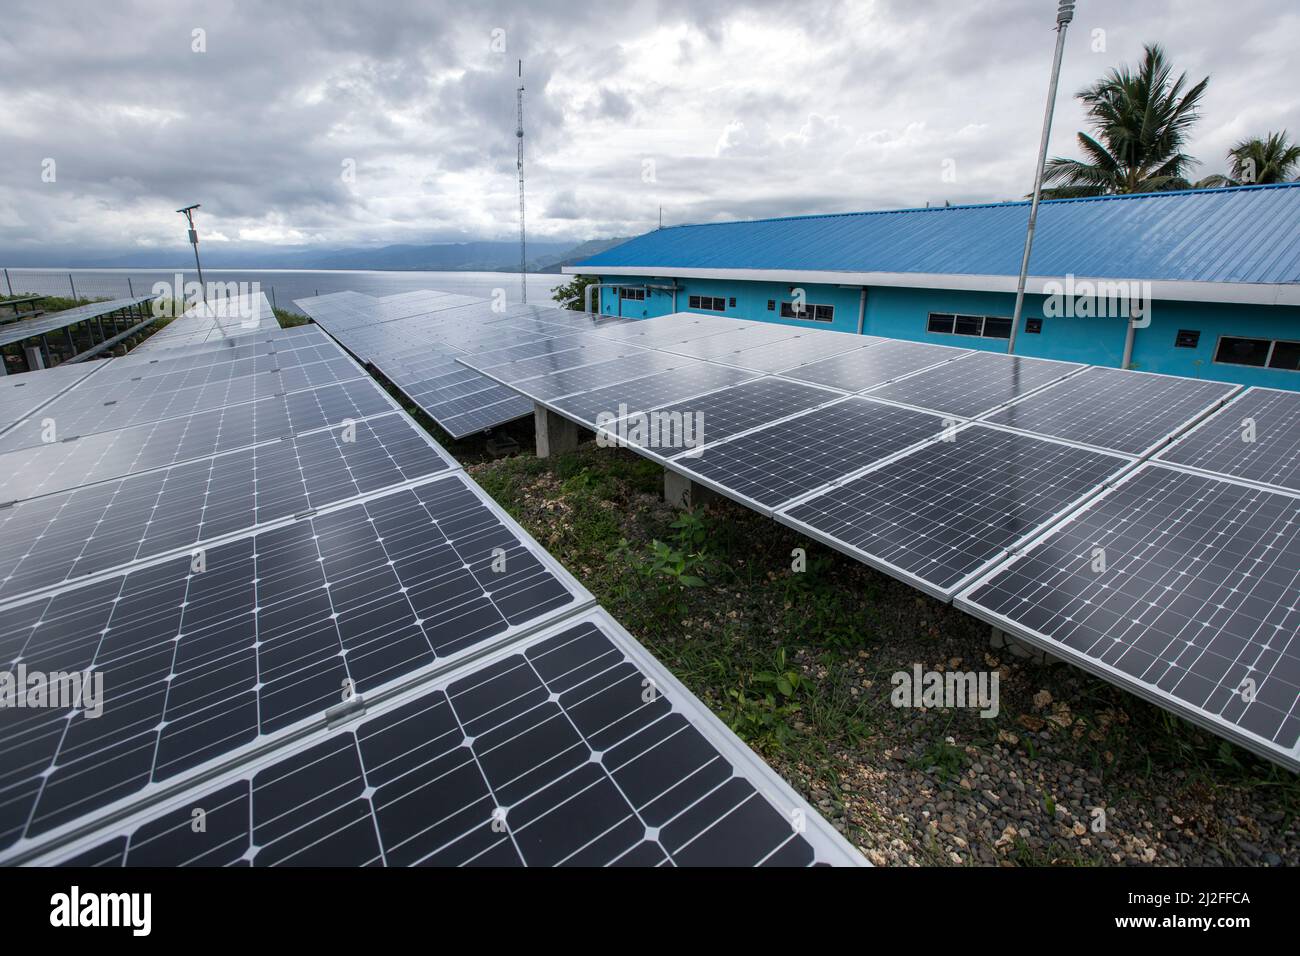 MCC ha llevado electricidad estable con energía solar a los residentes de la isla de Karampuang, Indonesia, bajo el proyecto de prosperidad verde de la Indone Foto de stock